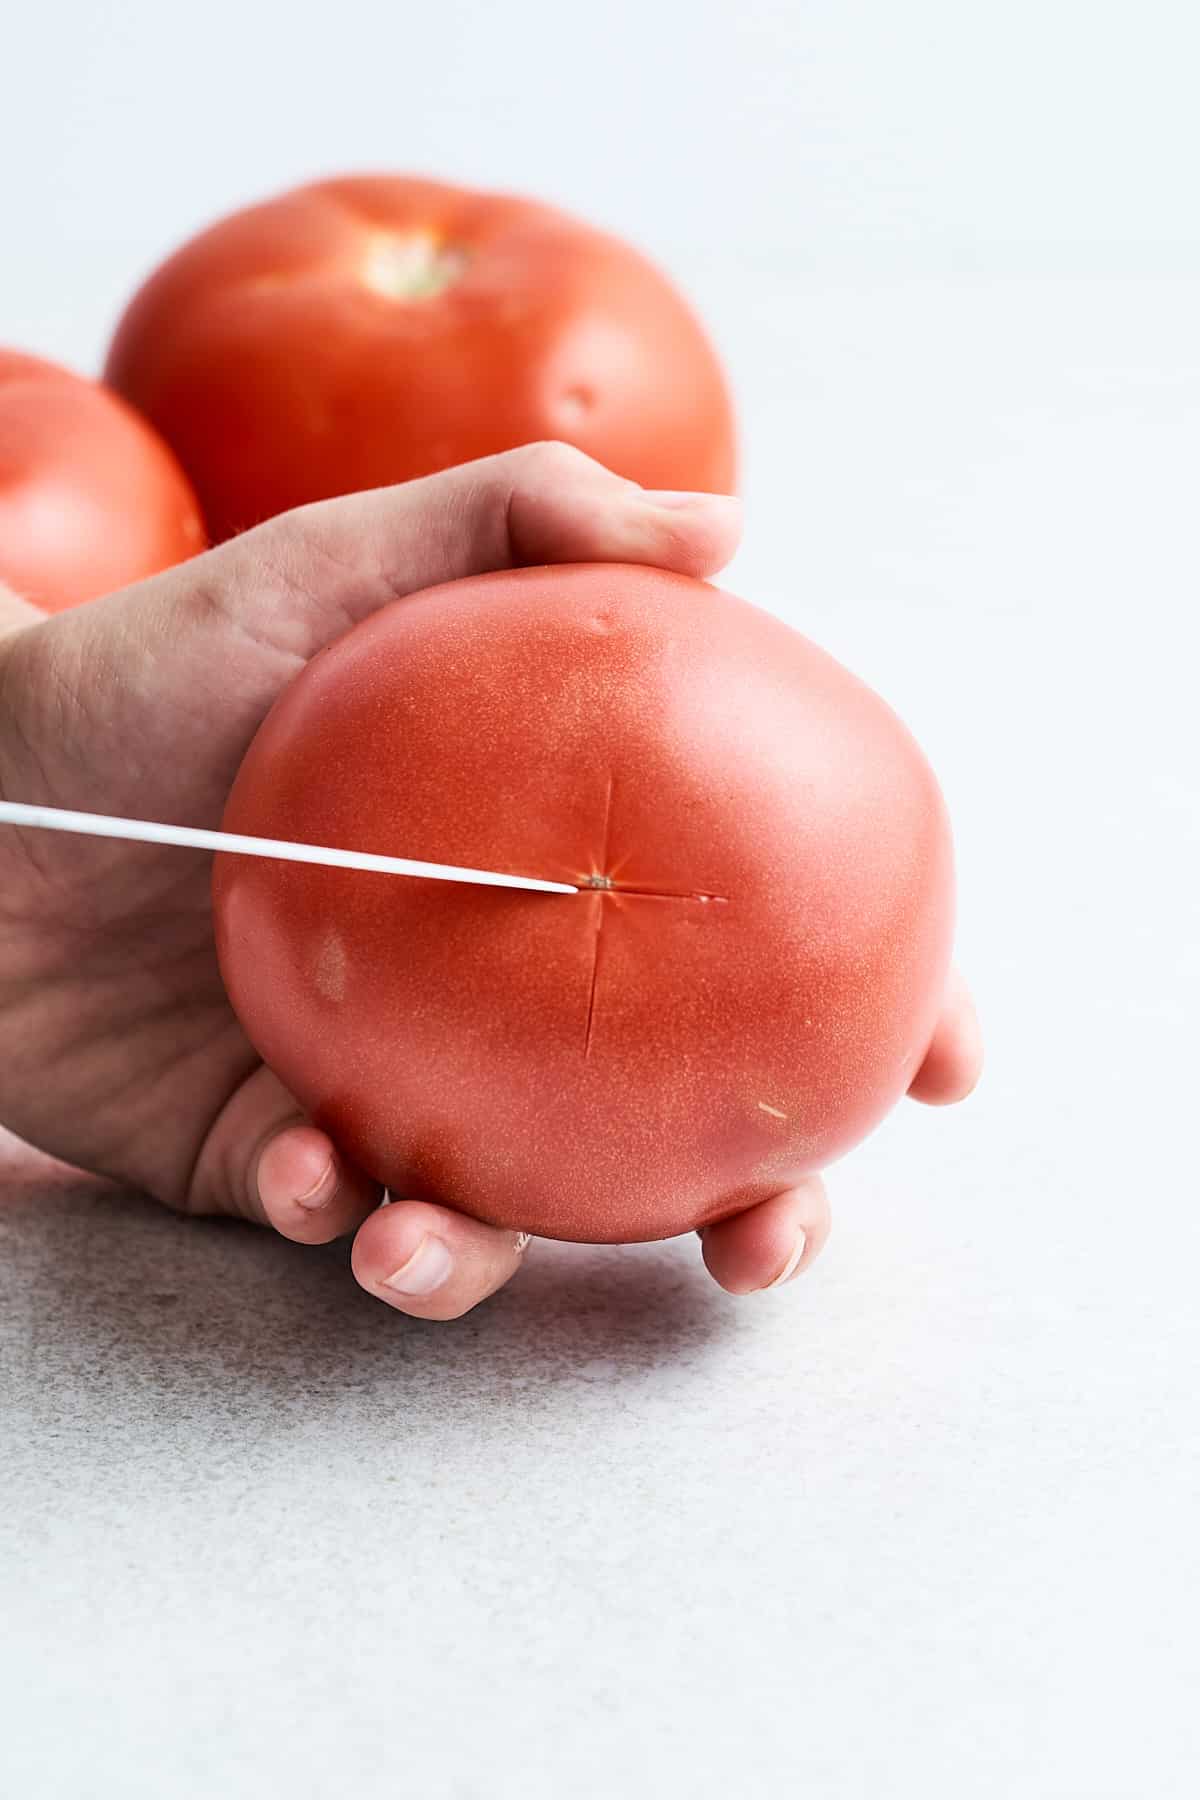 Scoring a tomato.